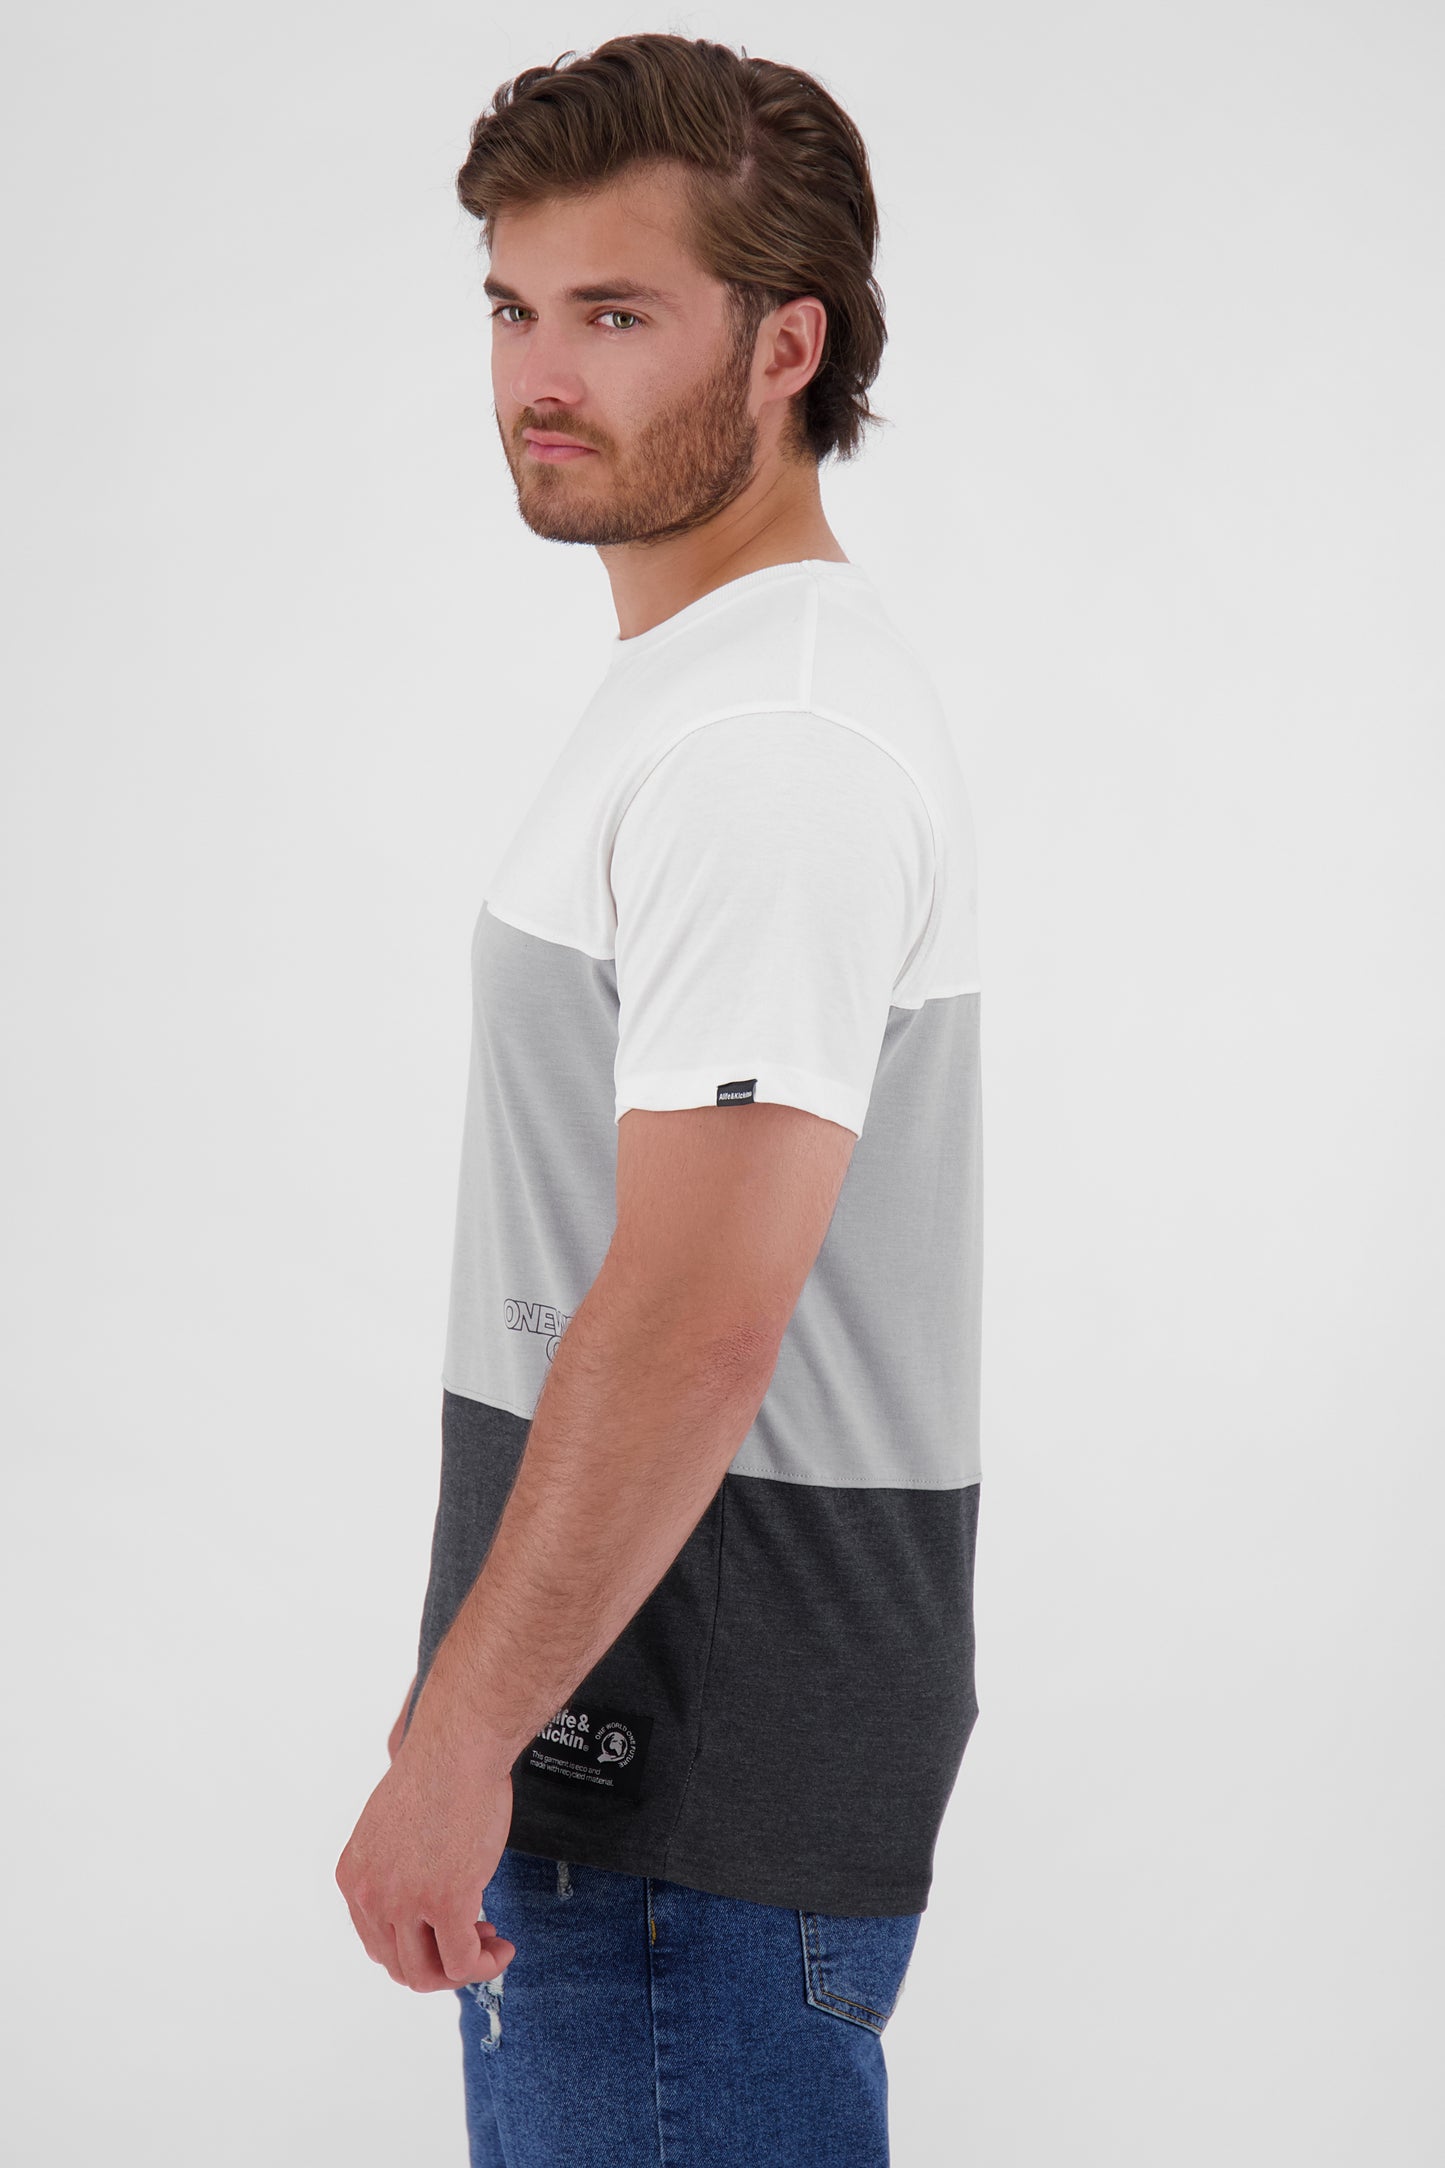 Vielseitiger Begleiter - BenAK A T-Shirt für Herren in weicher Jerseyqualität Schwarz